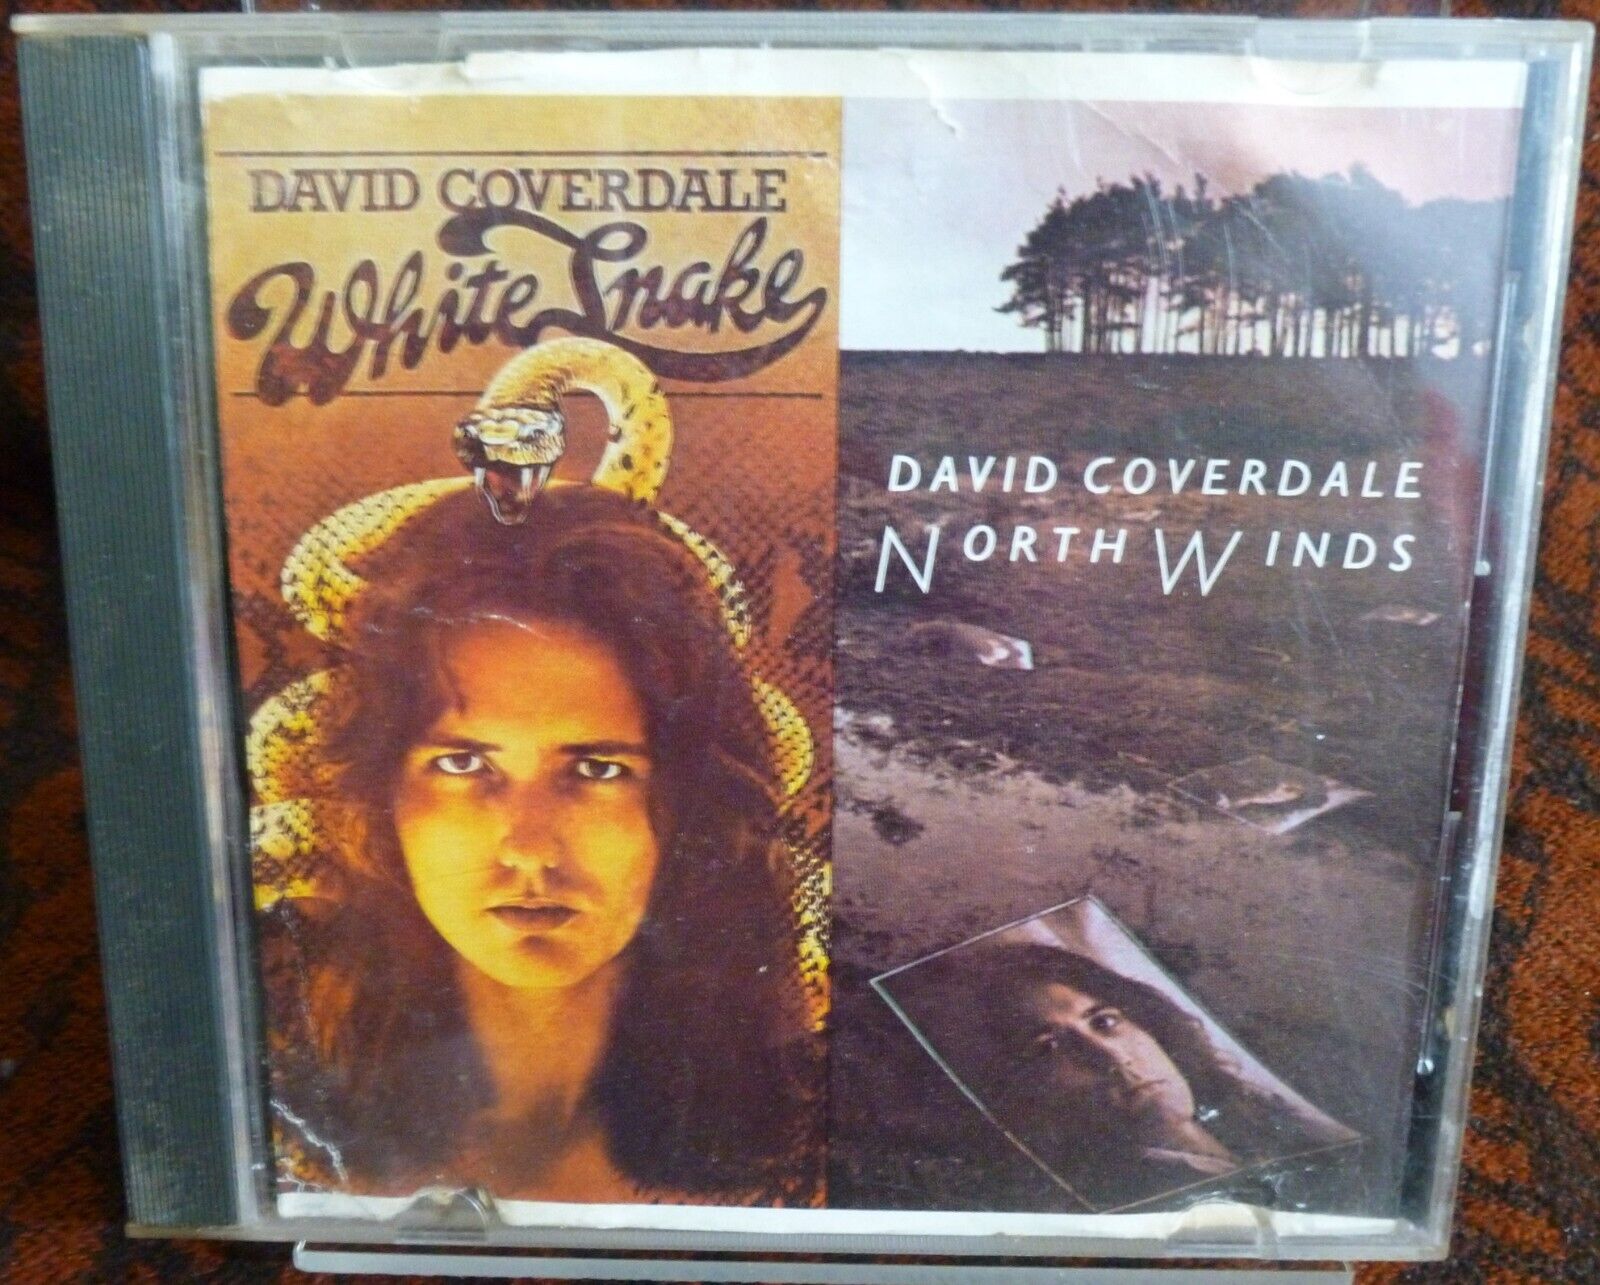 David Coverdale - WhiteSnake / Northwinds ( Music CD, 1990 ) Damaged Coverart